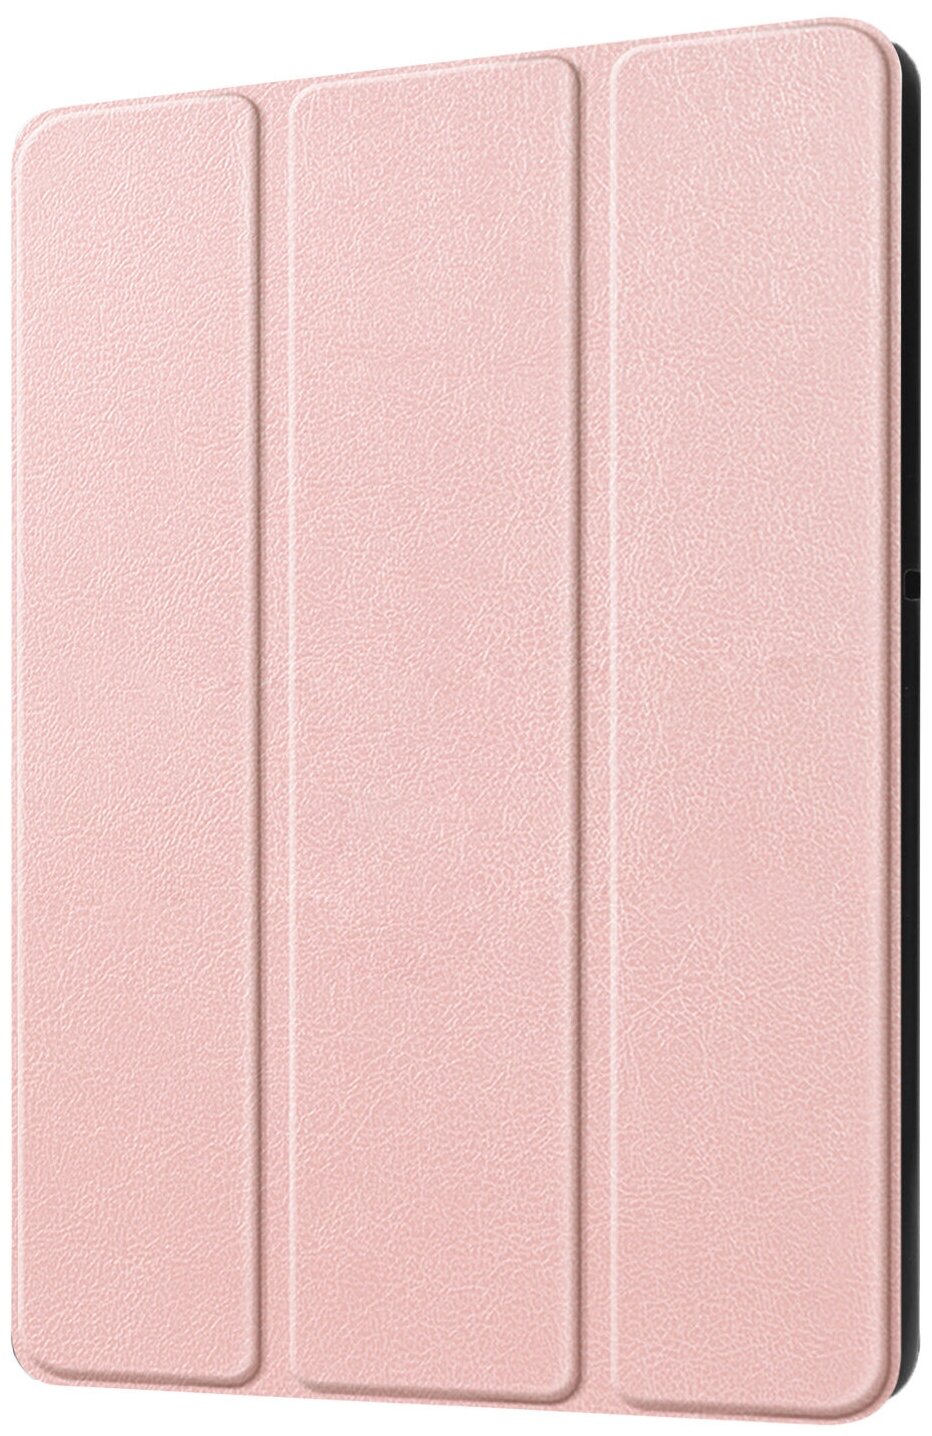 Чехол-обложка MyPads для iPad Pro 12.9 (2018) A1895, A1983, A2014 тонкий умный кожаный на пластиковой основе с трансформацией в подставку розовый